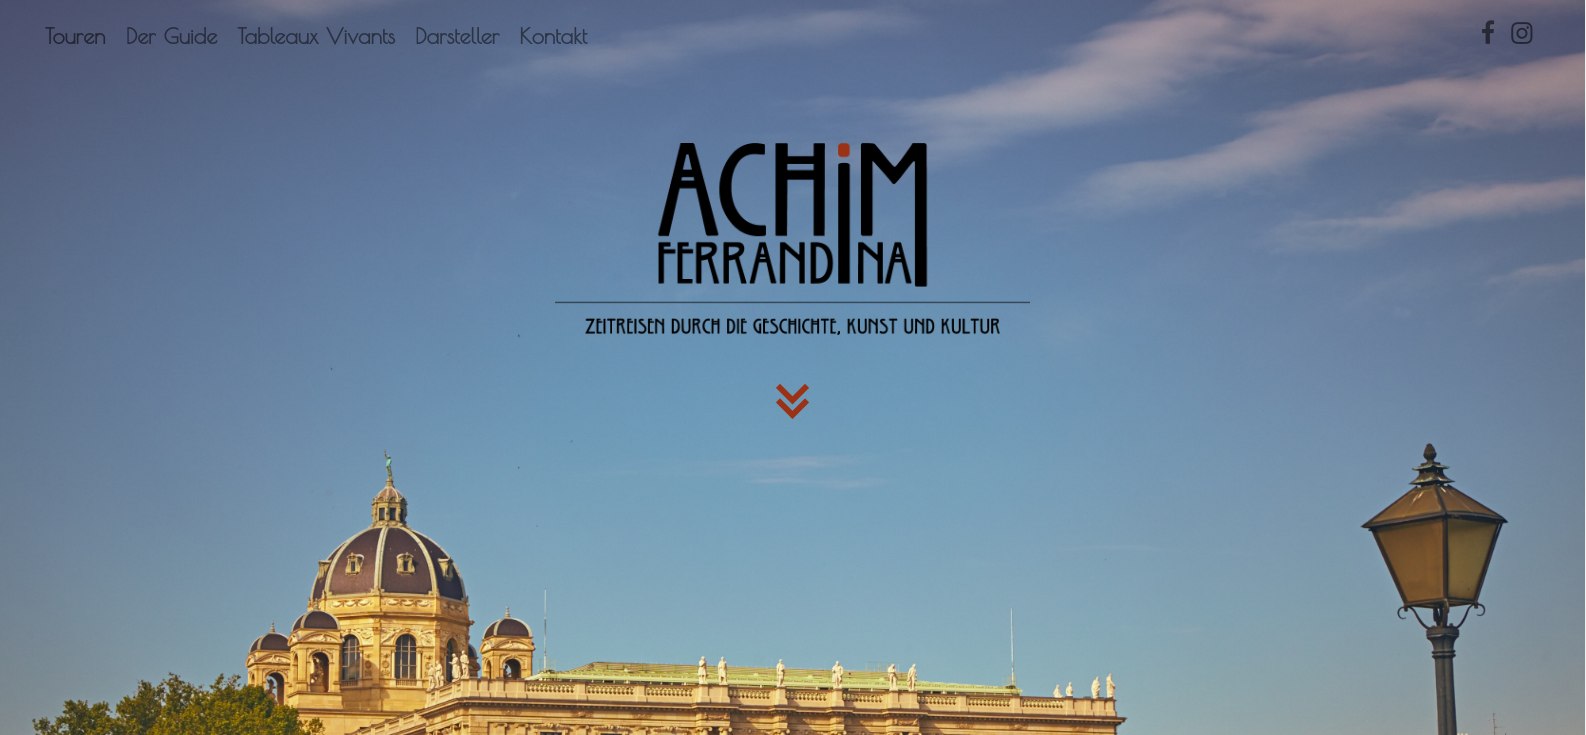 Achim-ferrandina-Guide